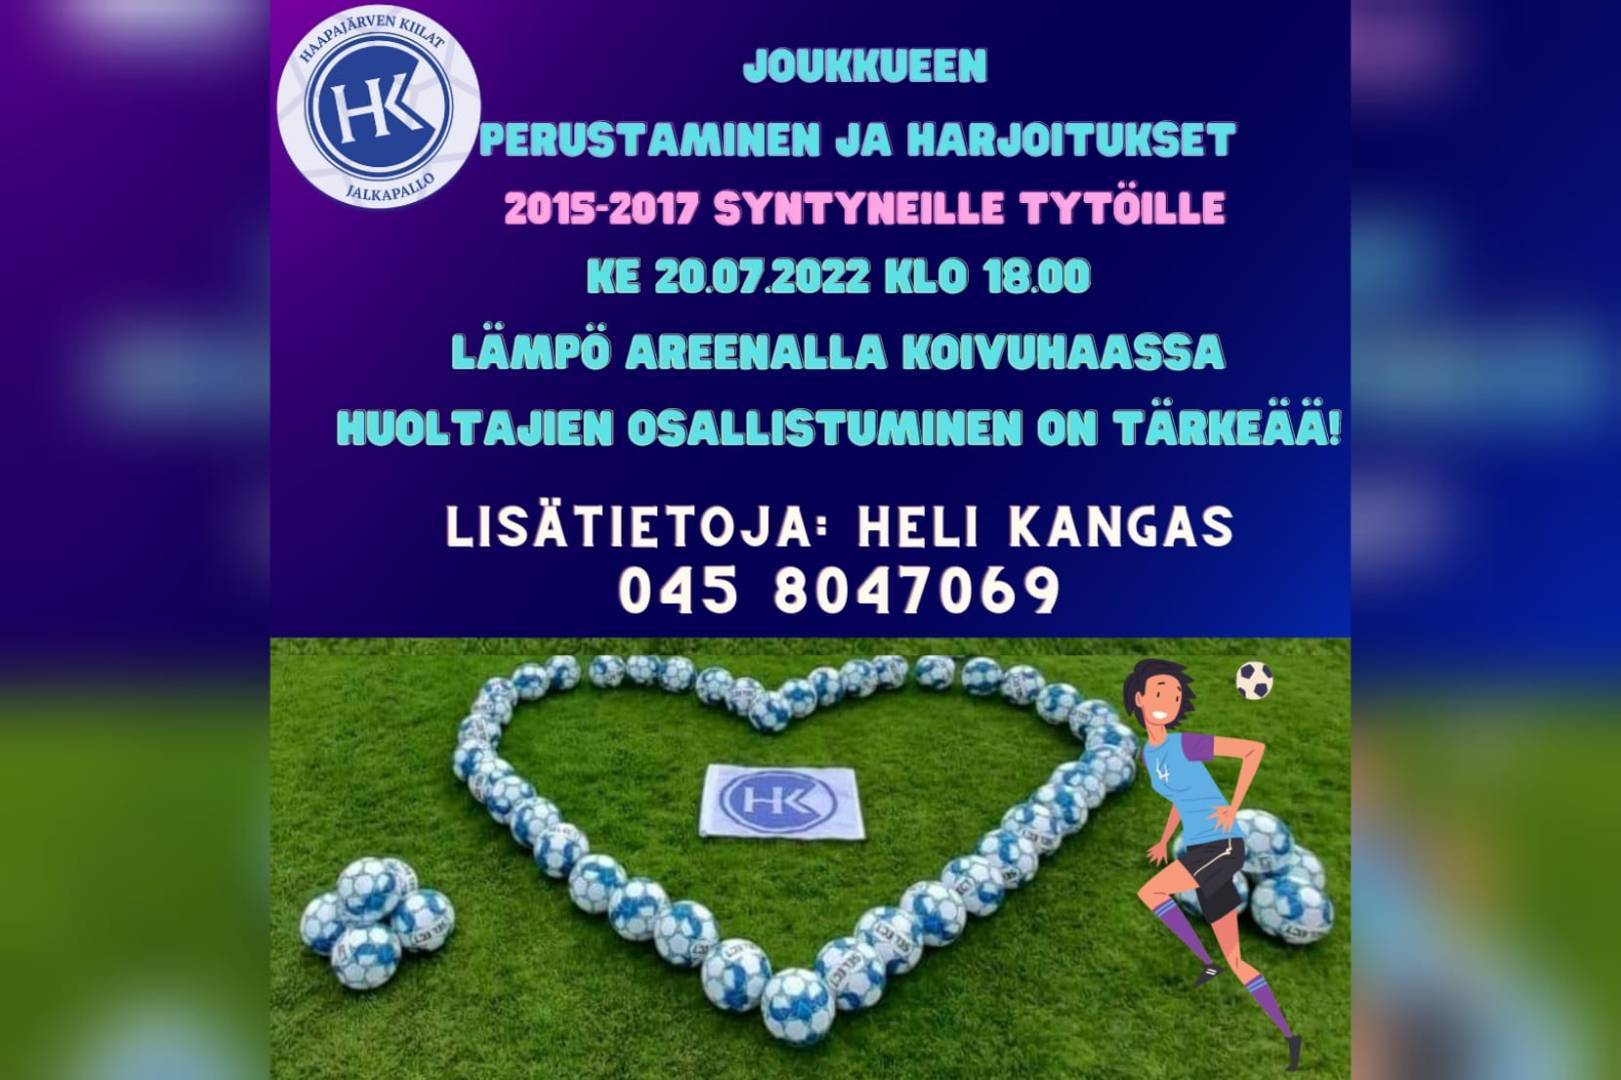 Uusi joukkue 2015-2017 syntyneille tytöille